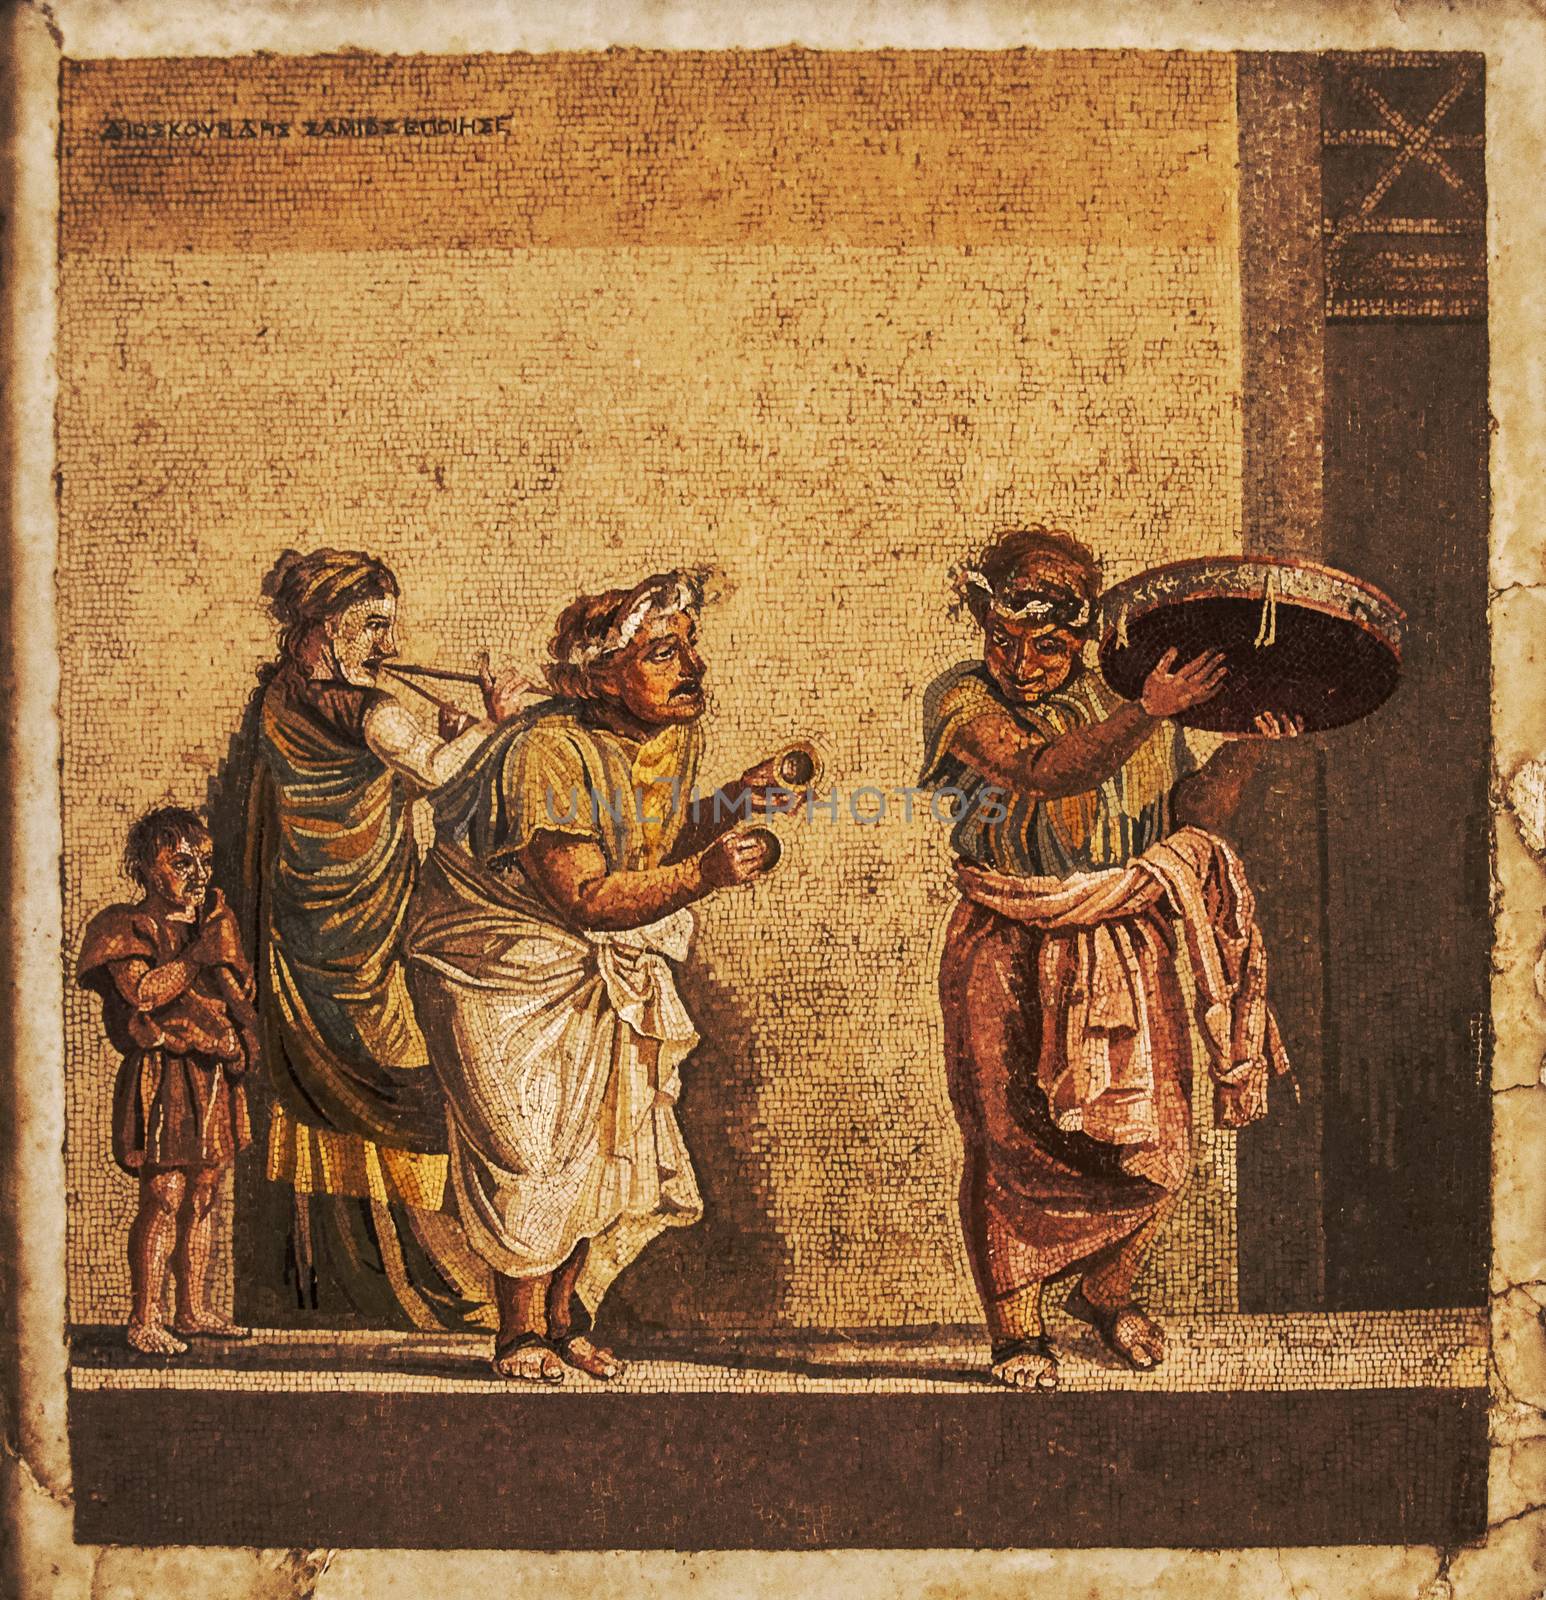 roman mosaic from pompeii houses, Naples